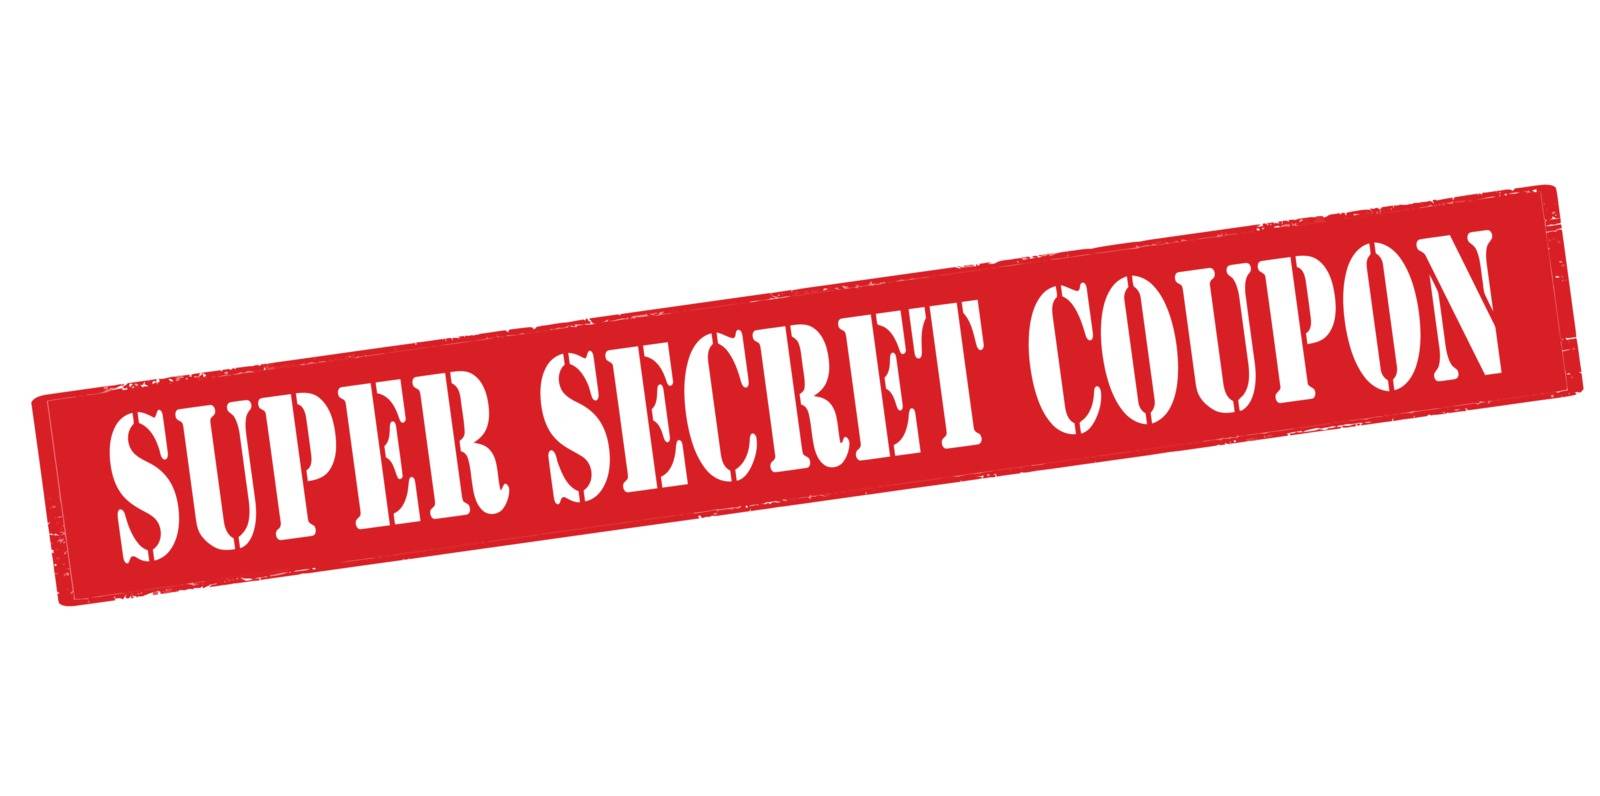 Super secret coupon by carmenbobo